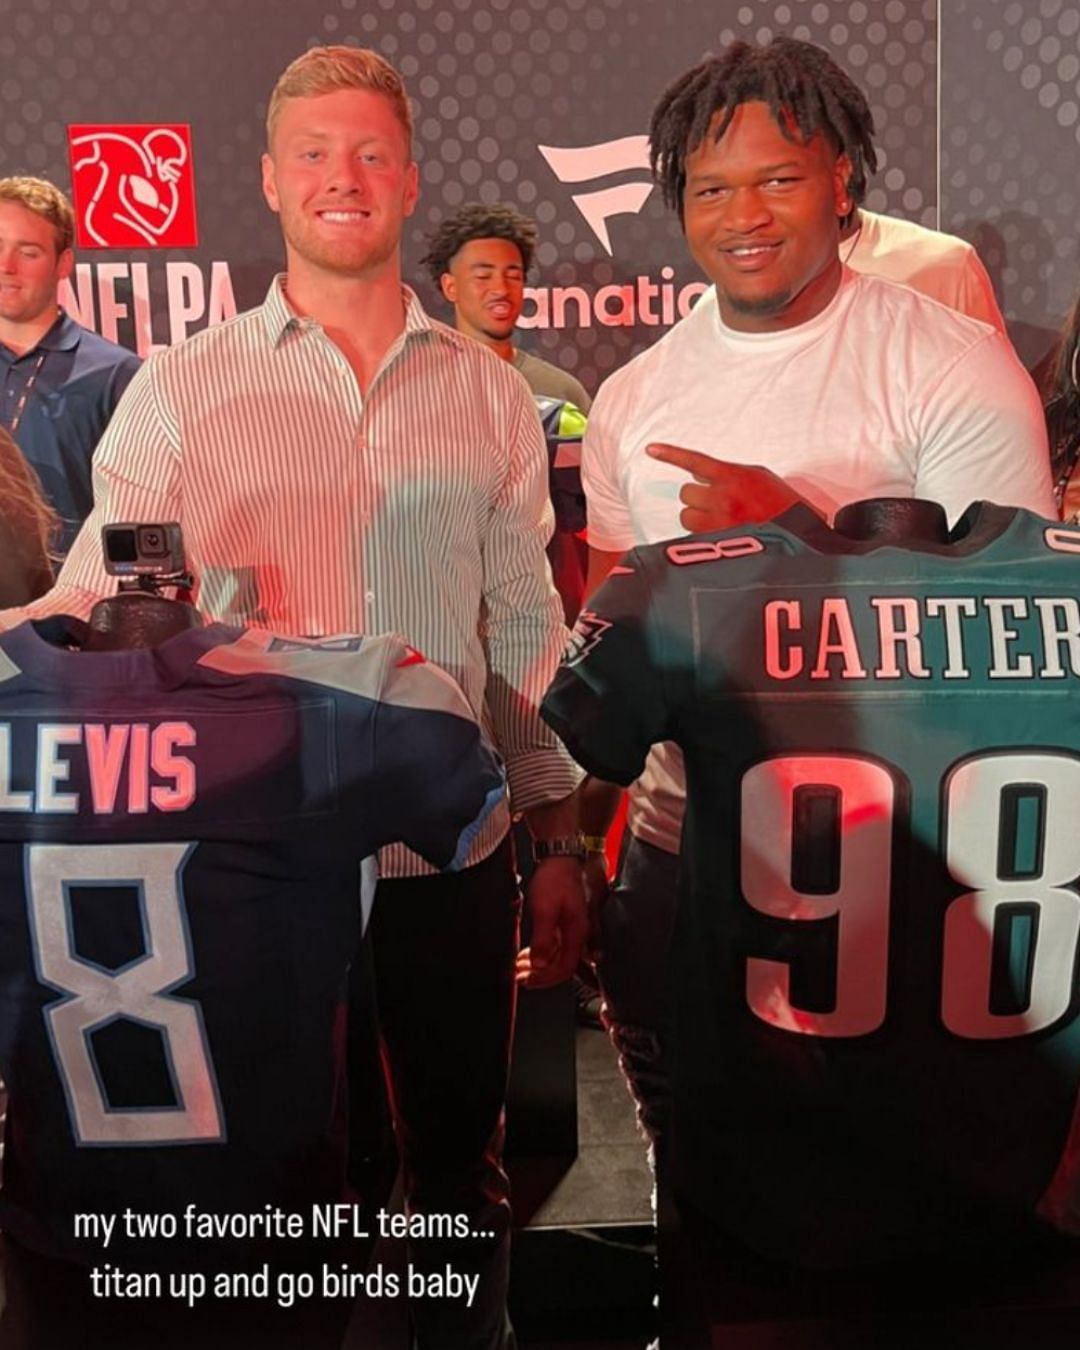 Levis with fellow rookie DT Jalen Carter. Credit: @giaduddy (IG)